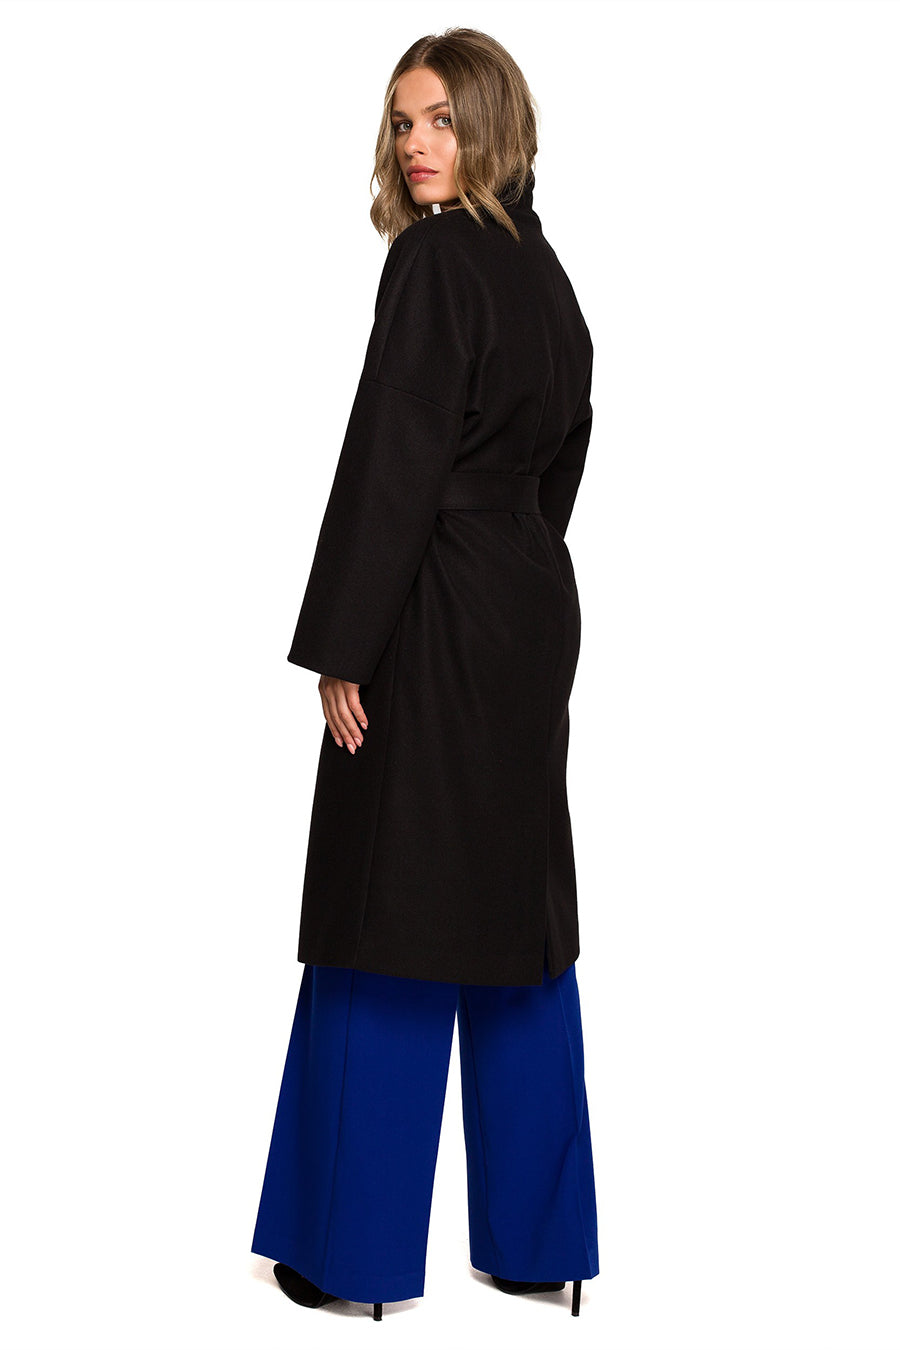 Γυναικείο παλτό Iphigenia, Μαύρο 2